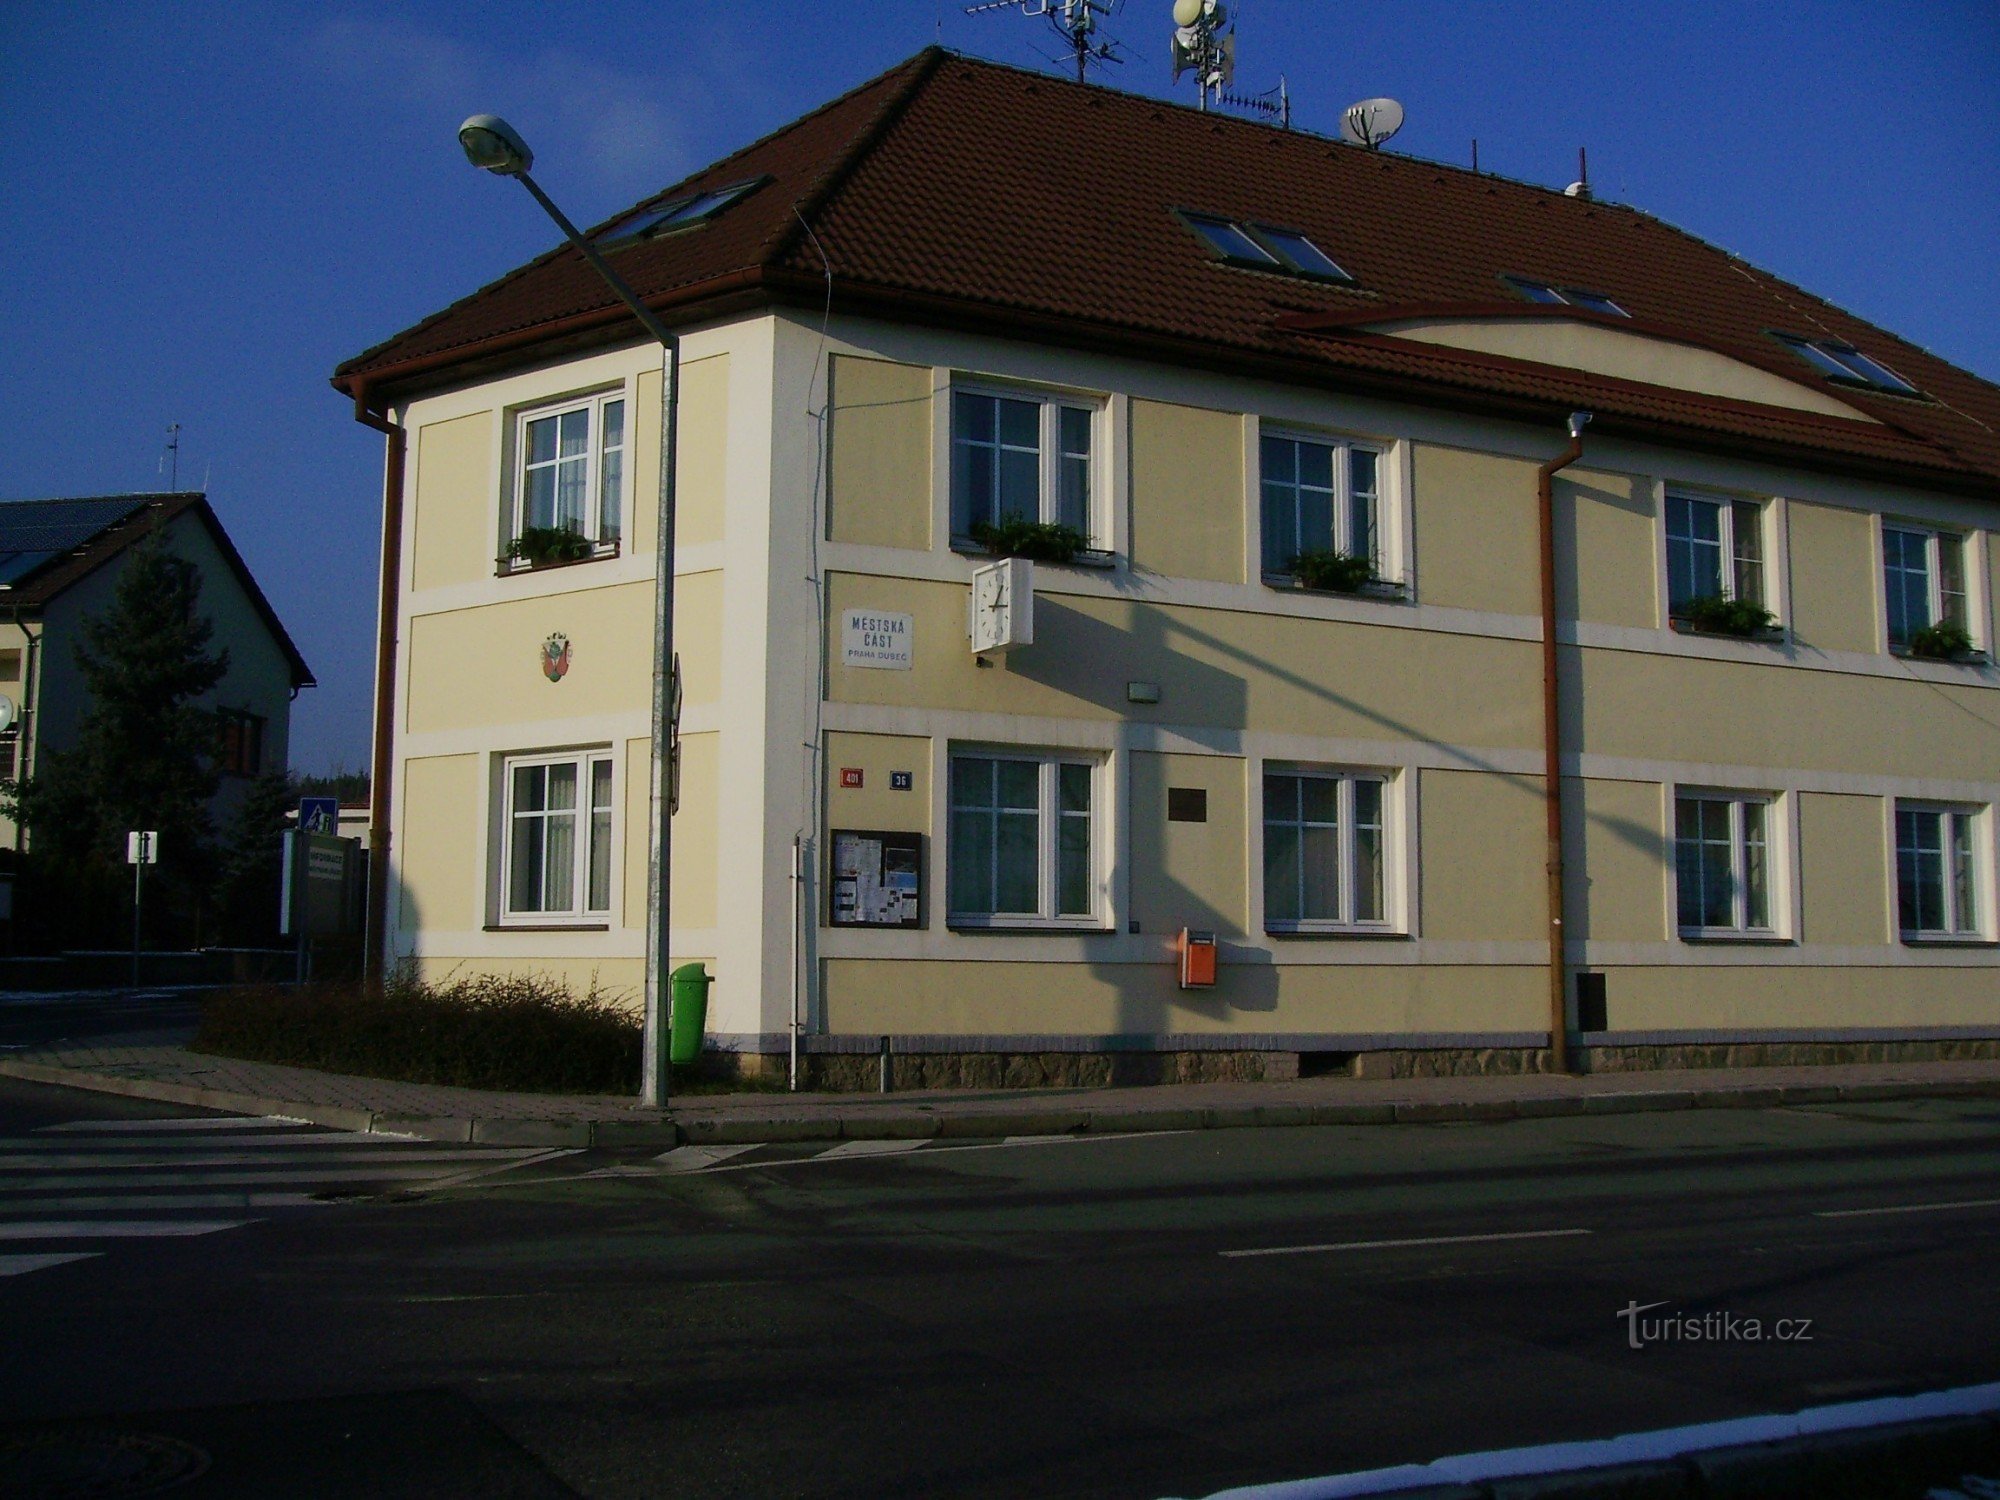 Văn phòng quận thành phố Praha - Dubeč